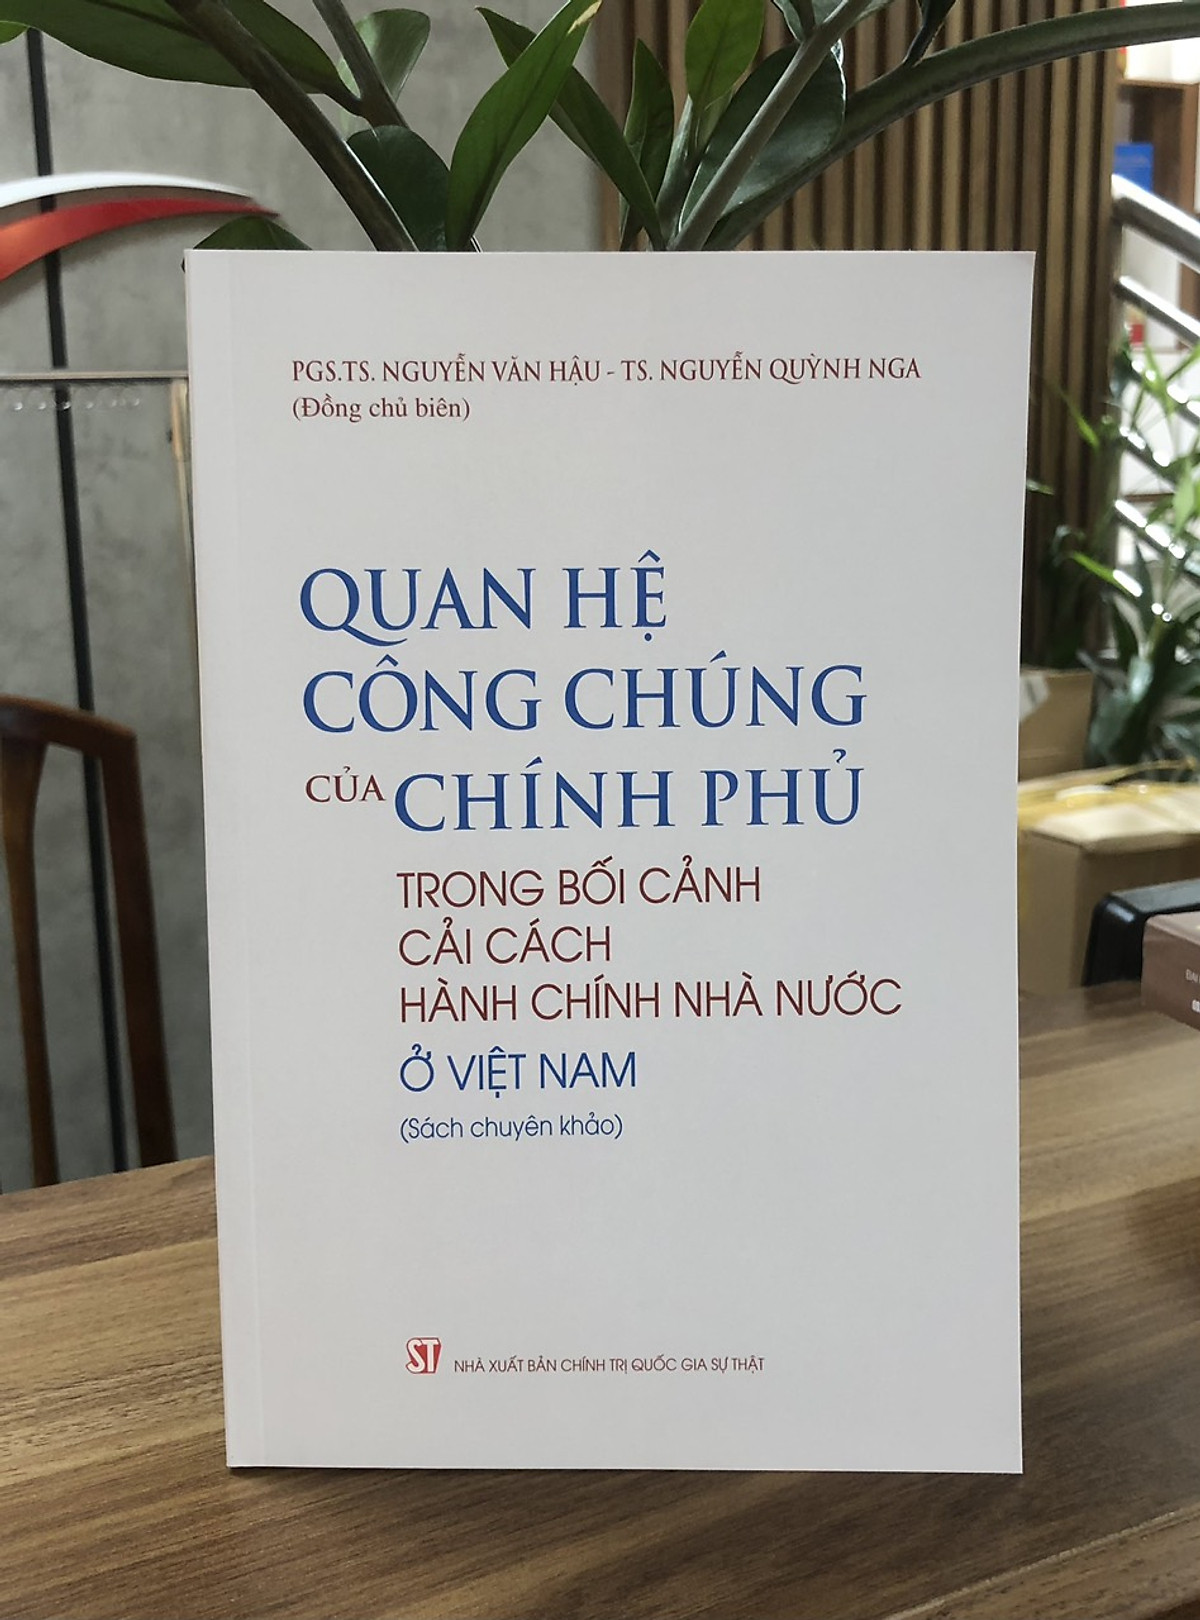 Quan hệ công chúng của Chính phủ trong bối cảnh cải cách hành chính Nhà nước ở Việt Nam (Sách Chuyên Khảo)